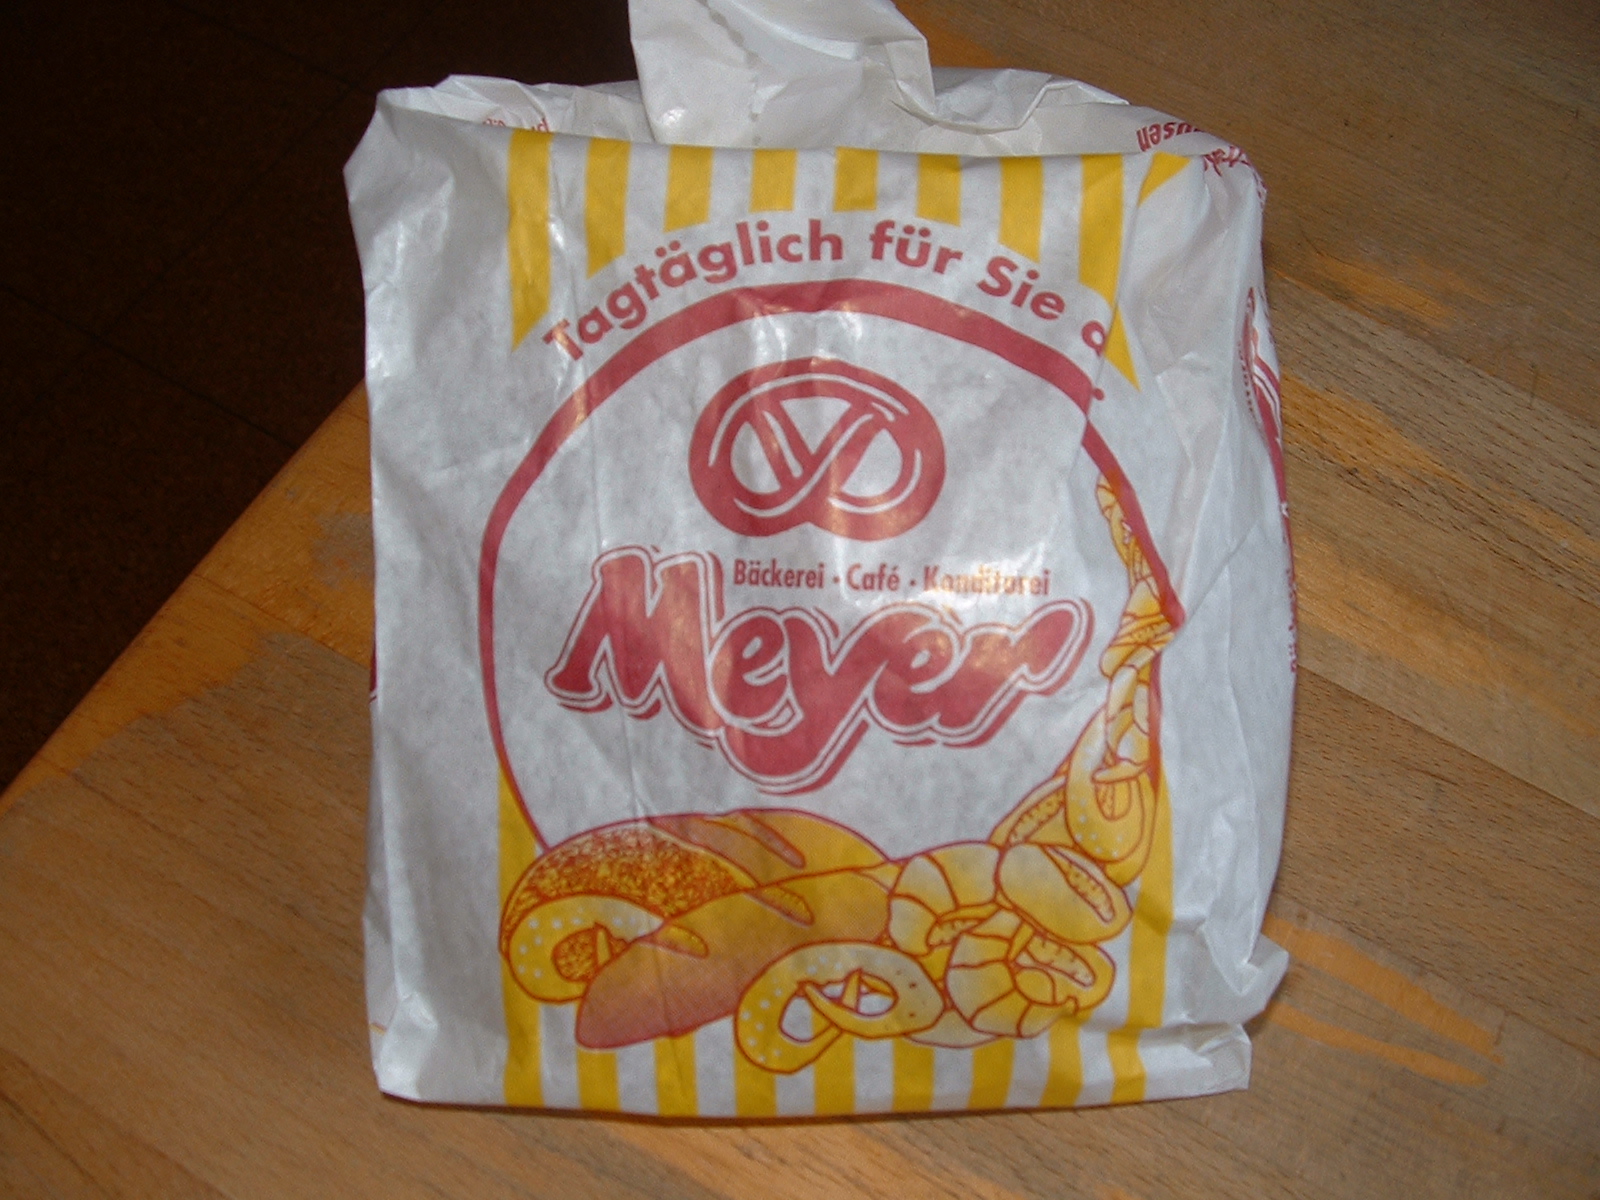 Bäckerei Meyer Wildeshausen - frisches Backwerk in der Tüte